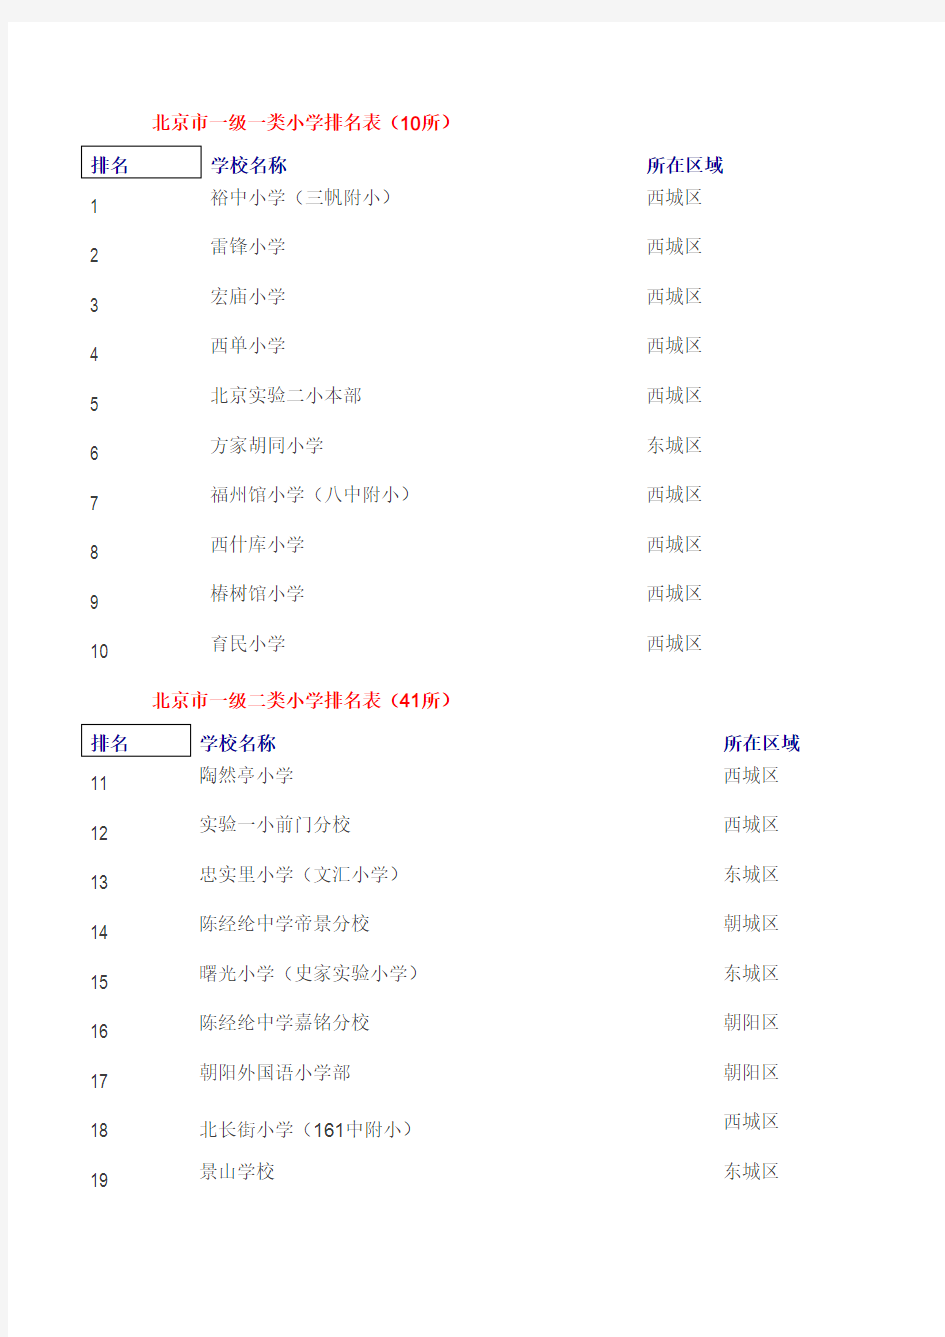 北京市小学排名表